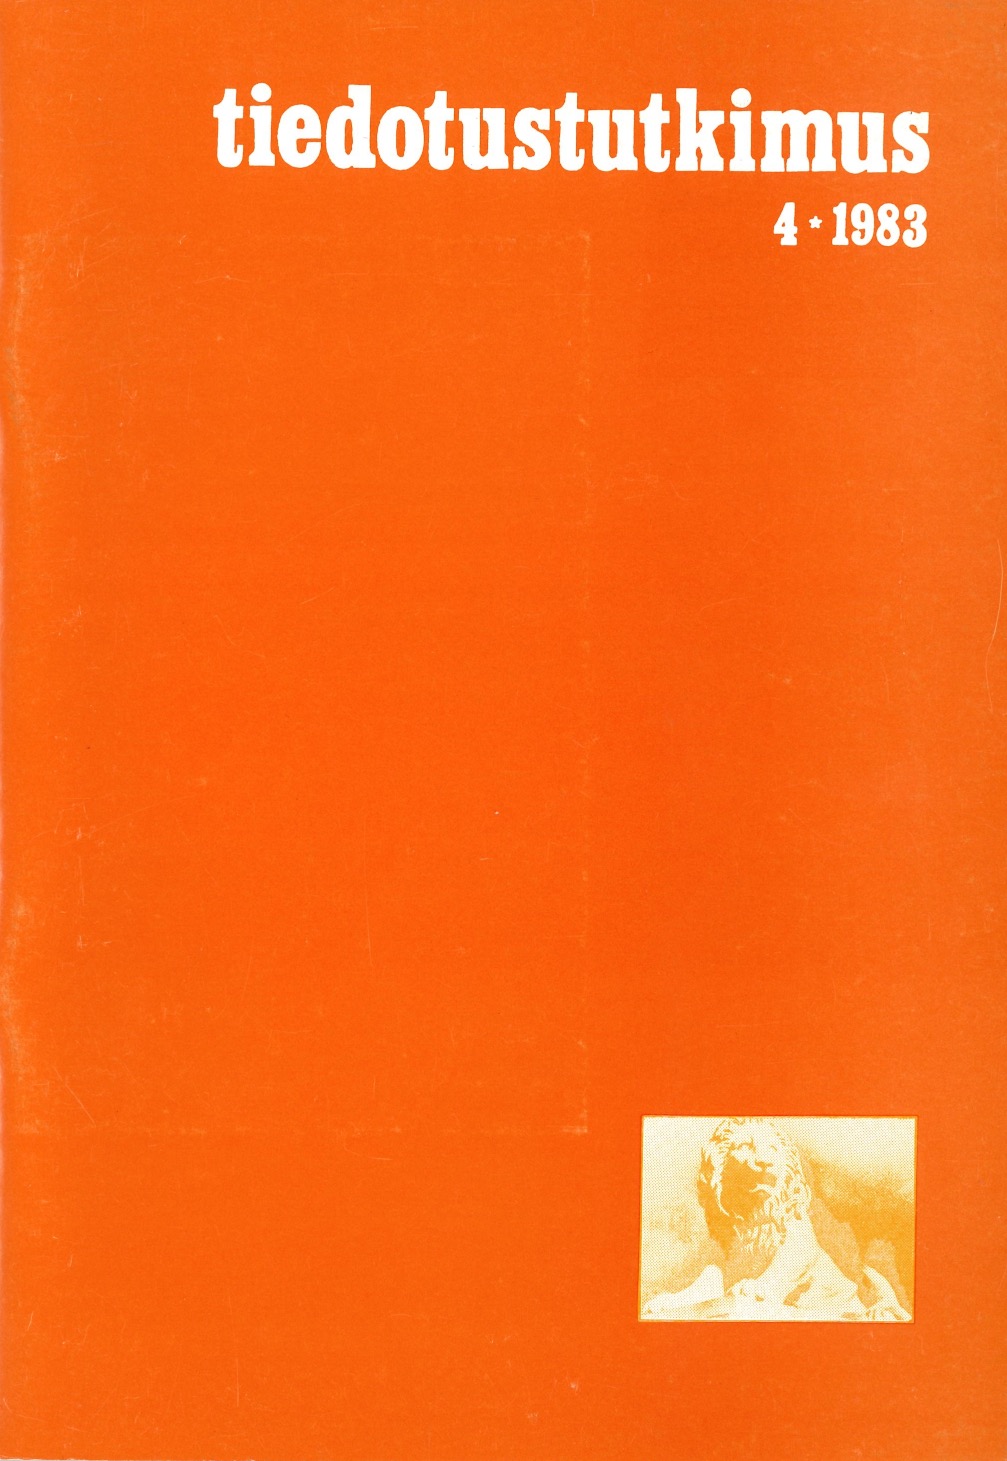 					Näytä Vol 6 Nro 4 (1983)
				